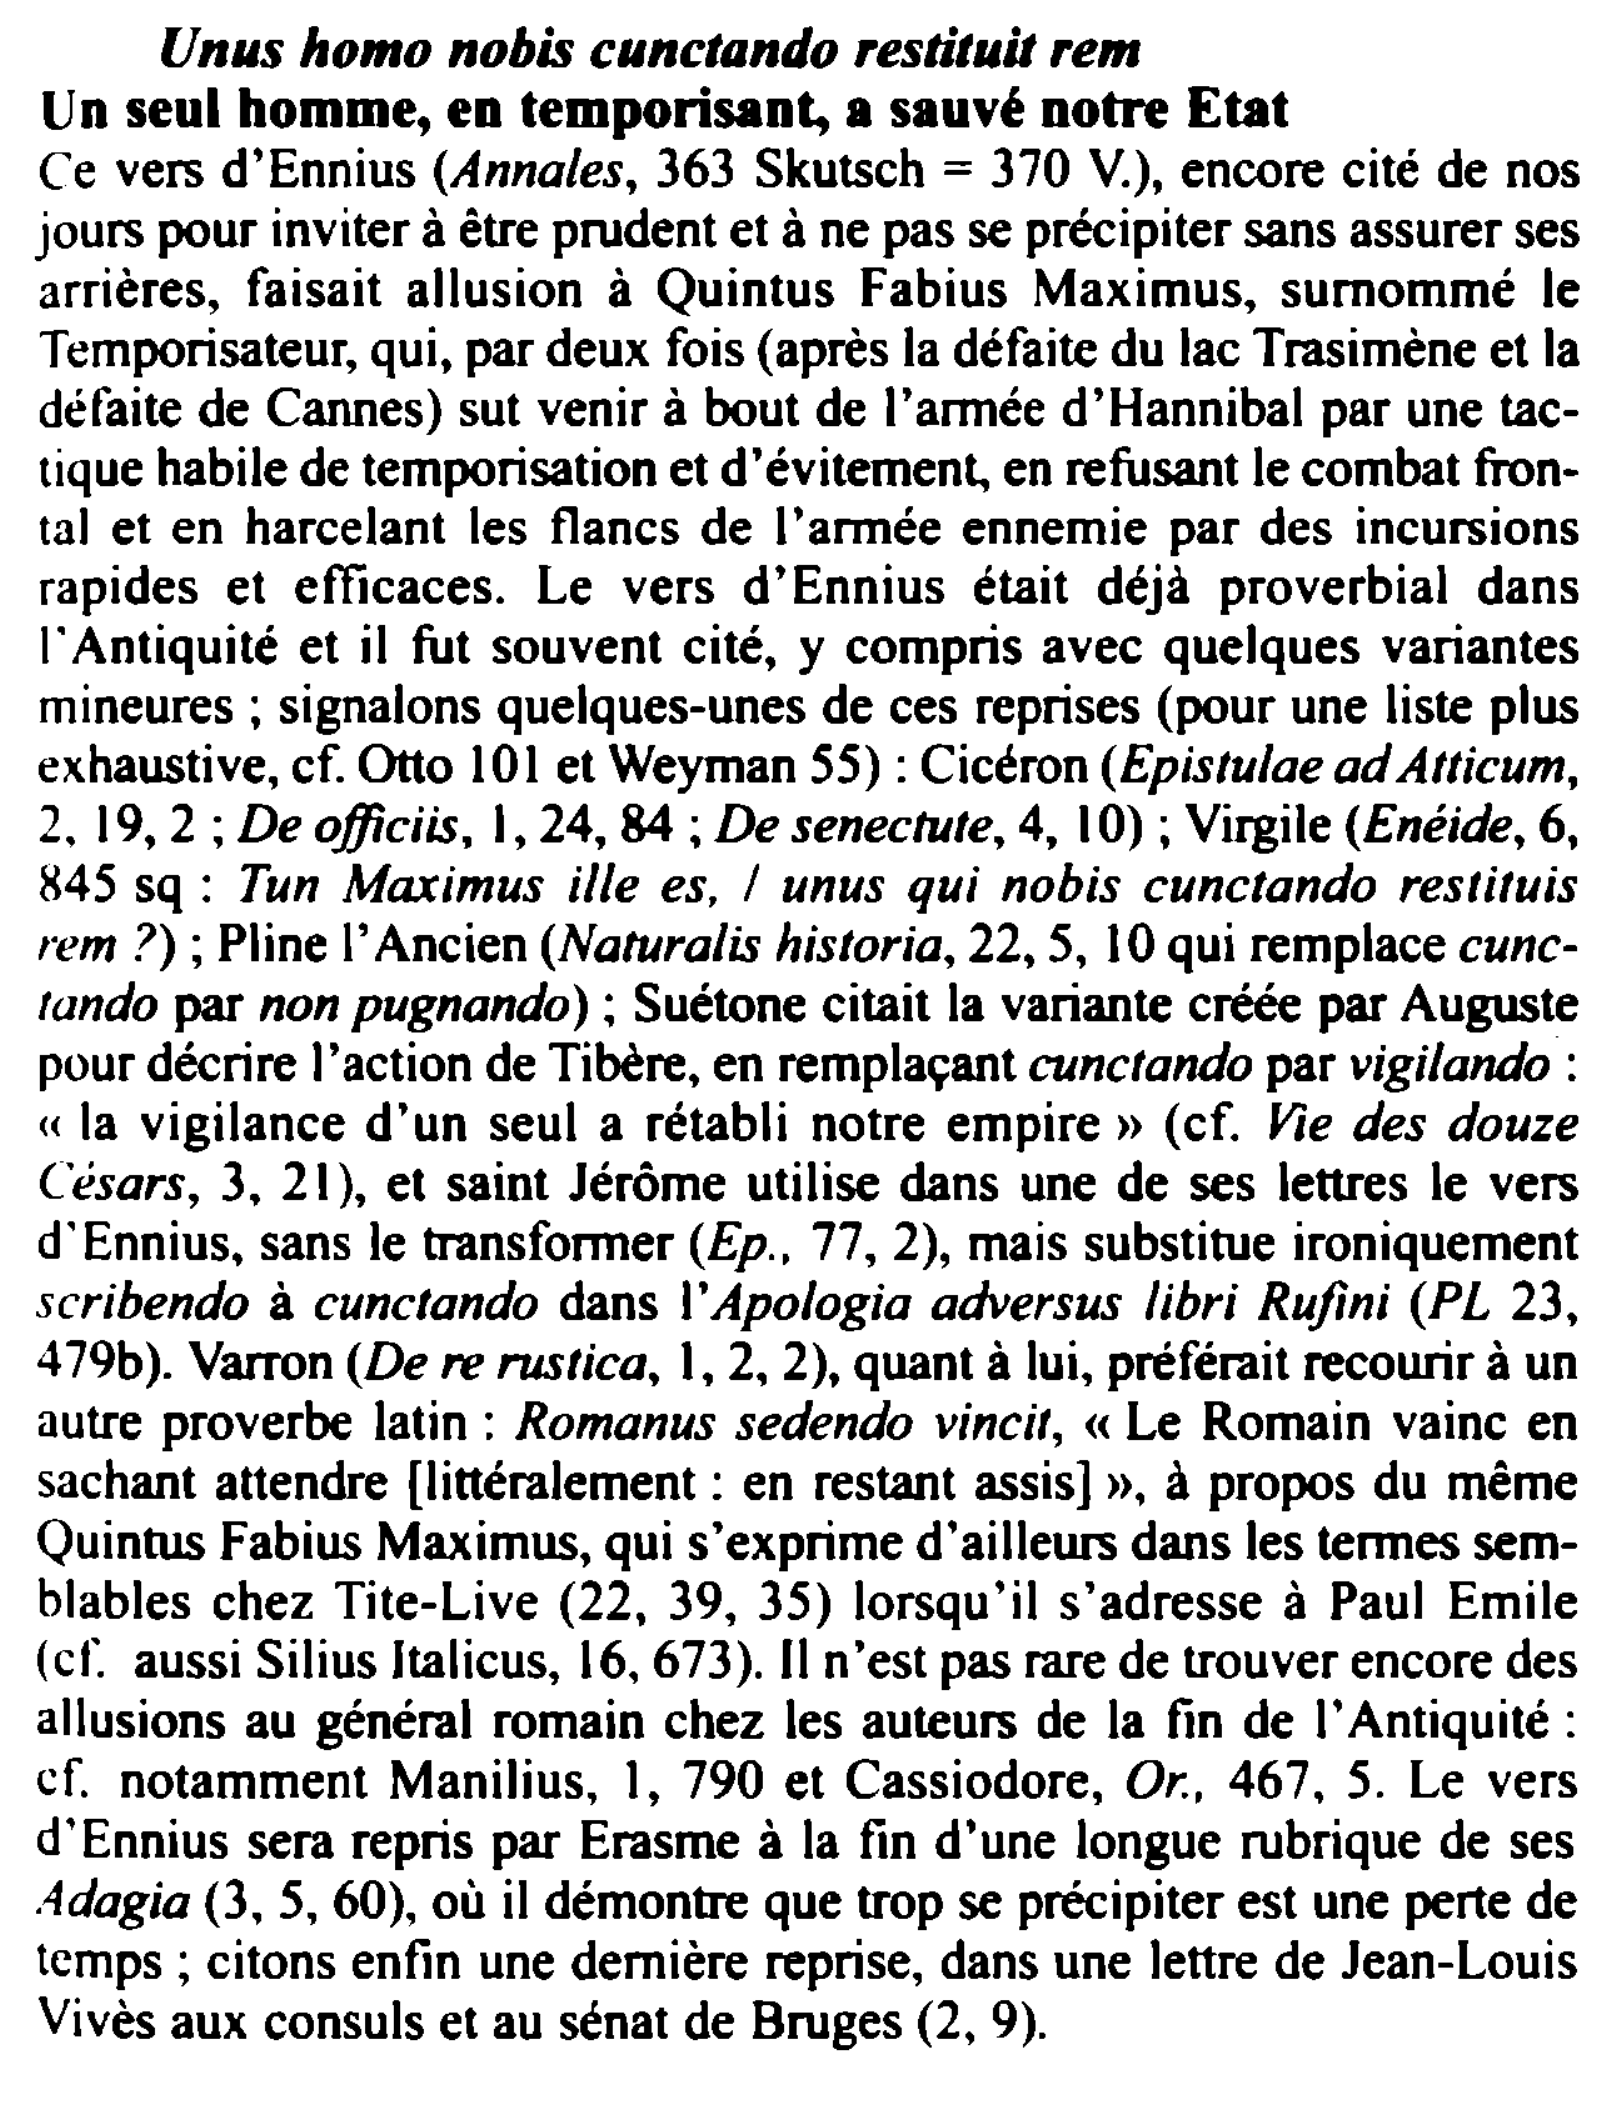 Prévisualisation du document Unus homo nabis cunctando restitua rem
Un seul homme, en temporisant, a sauvé notre Etat
Ce vers d'Ennius (Annales, 363...